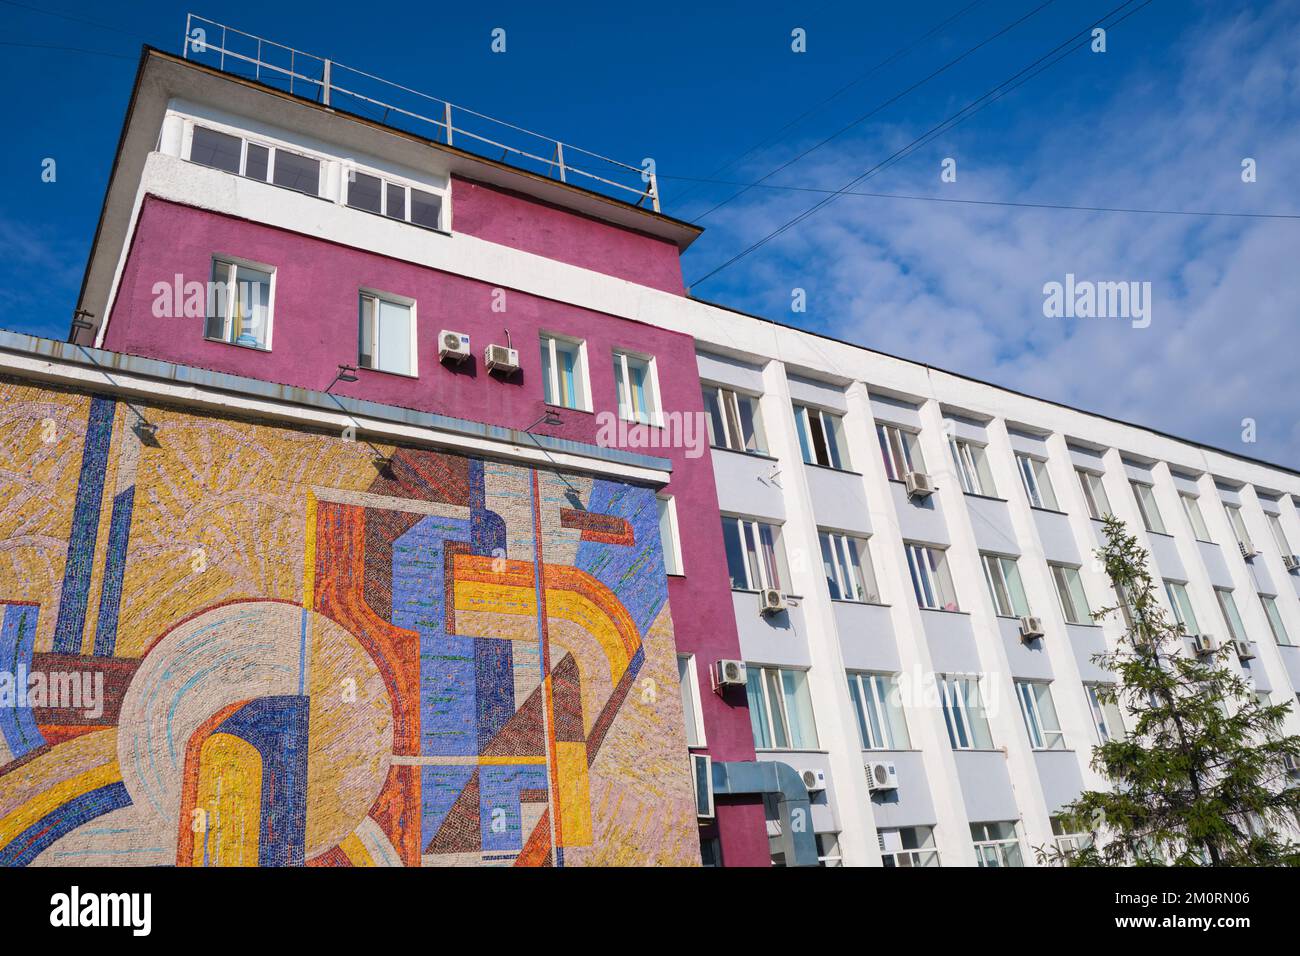 Ein zentrales sowjetisches, russisches, kommunistisches Gebäude mit einem großen Fliesen- und Mosaikgemälde in farbenfrohem, abstraktem Design. In Karaganda, Kasachstan. Stockfoto